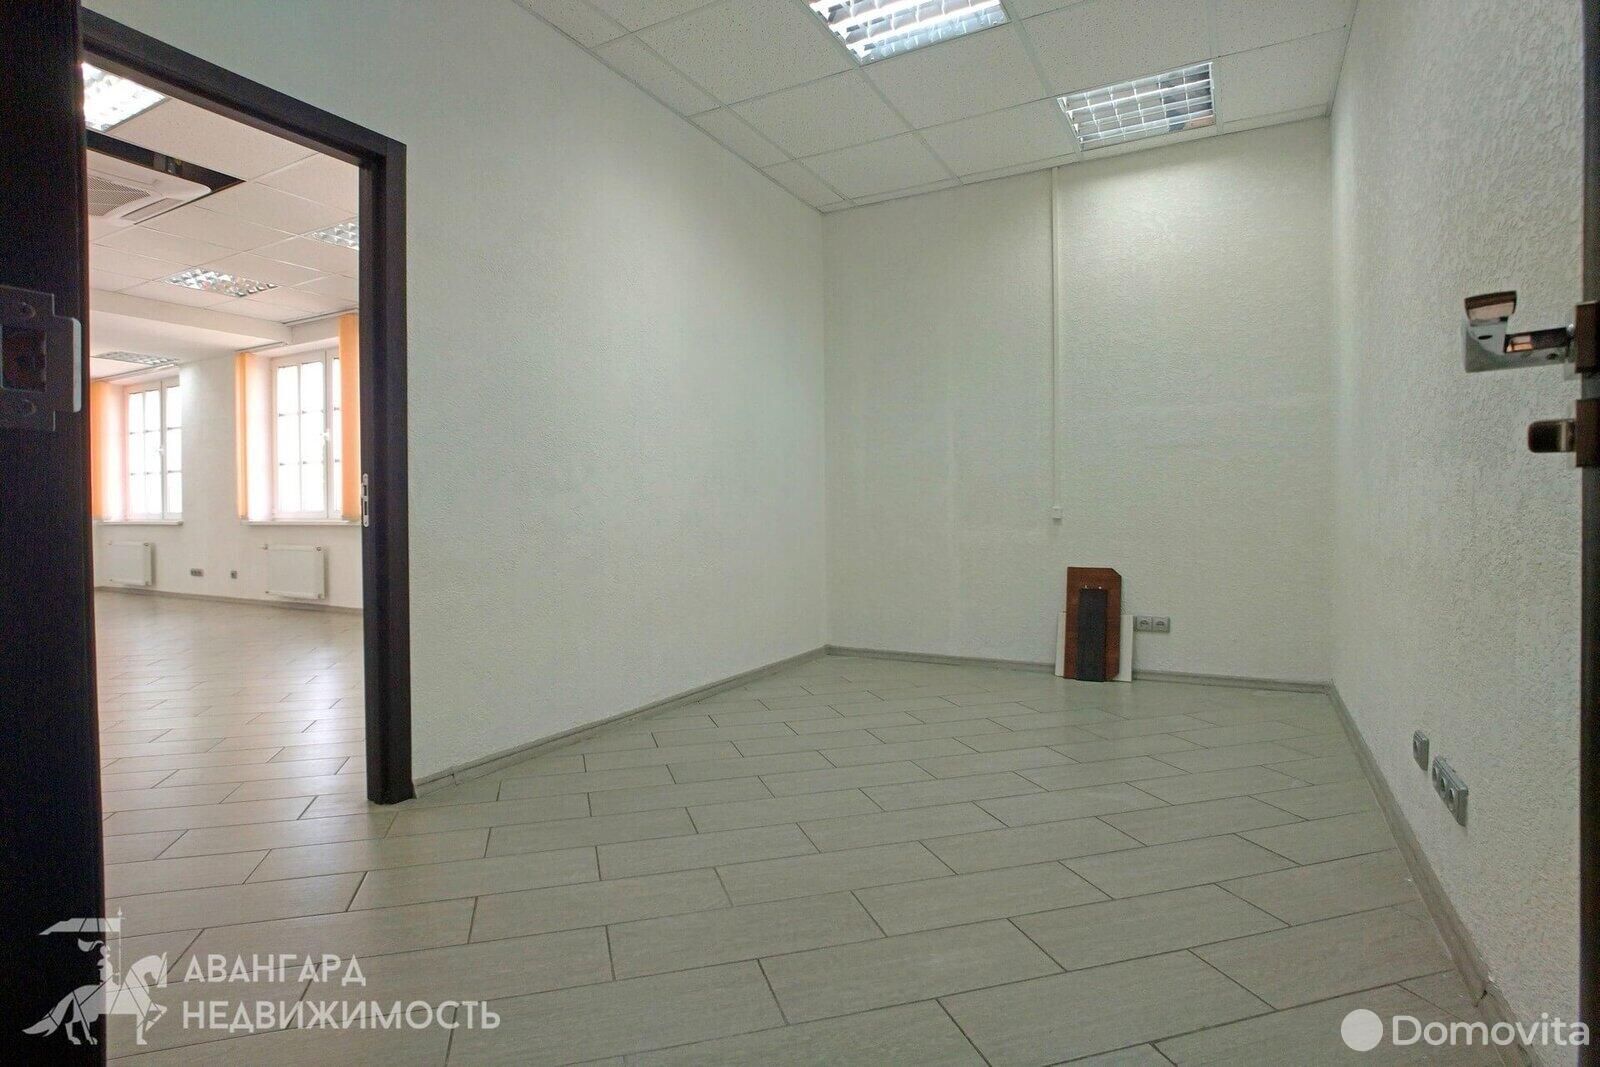 Аренда офиса на ул. Волгоградская, д. 6/А в Минске, 674EUR, код 9452 - фото 4